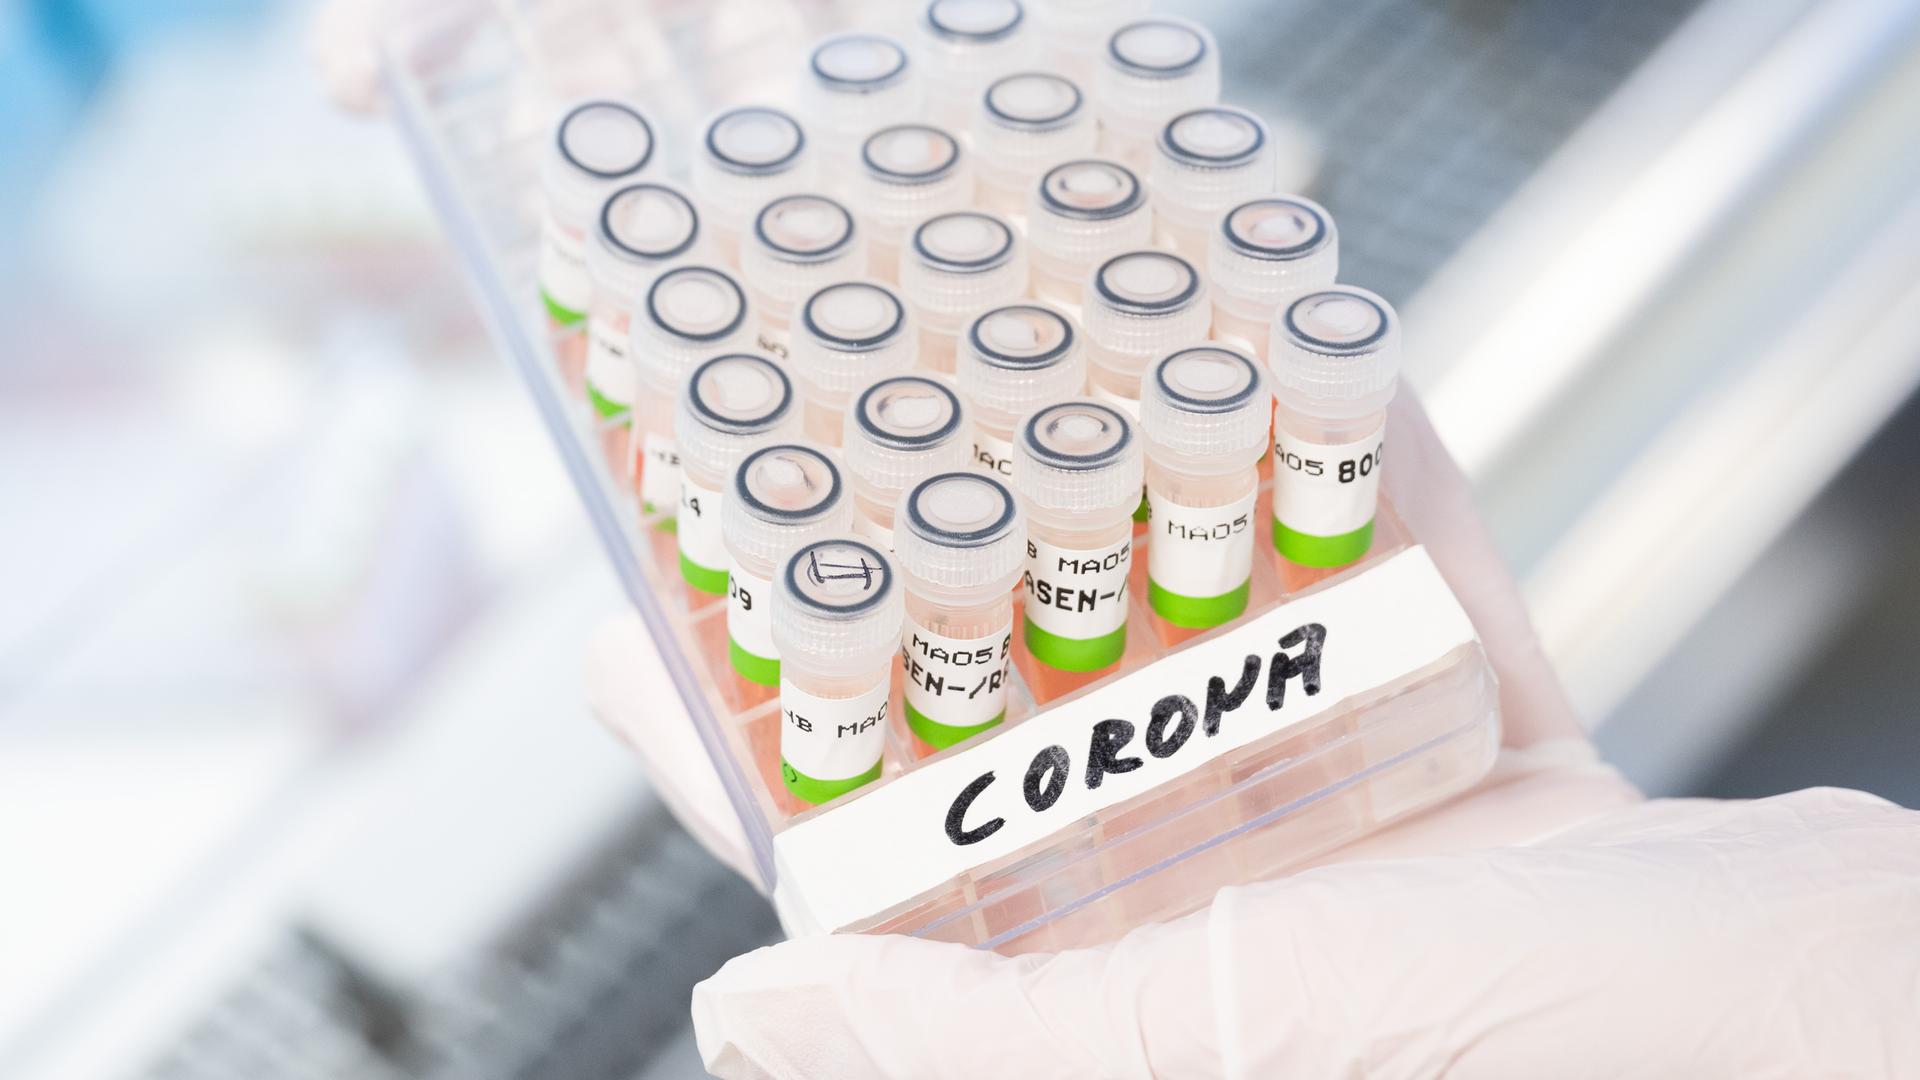 Las pruebas de PCR para coronavirus se realizarán en el laboratorio de PCR de la Oficina de Salud del Estado de Baja Sajonia (NLGA).